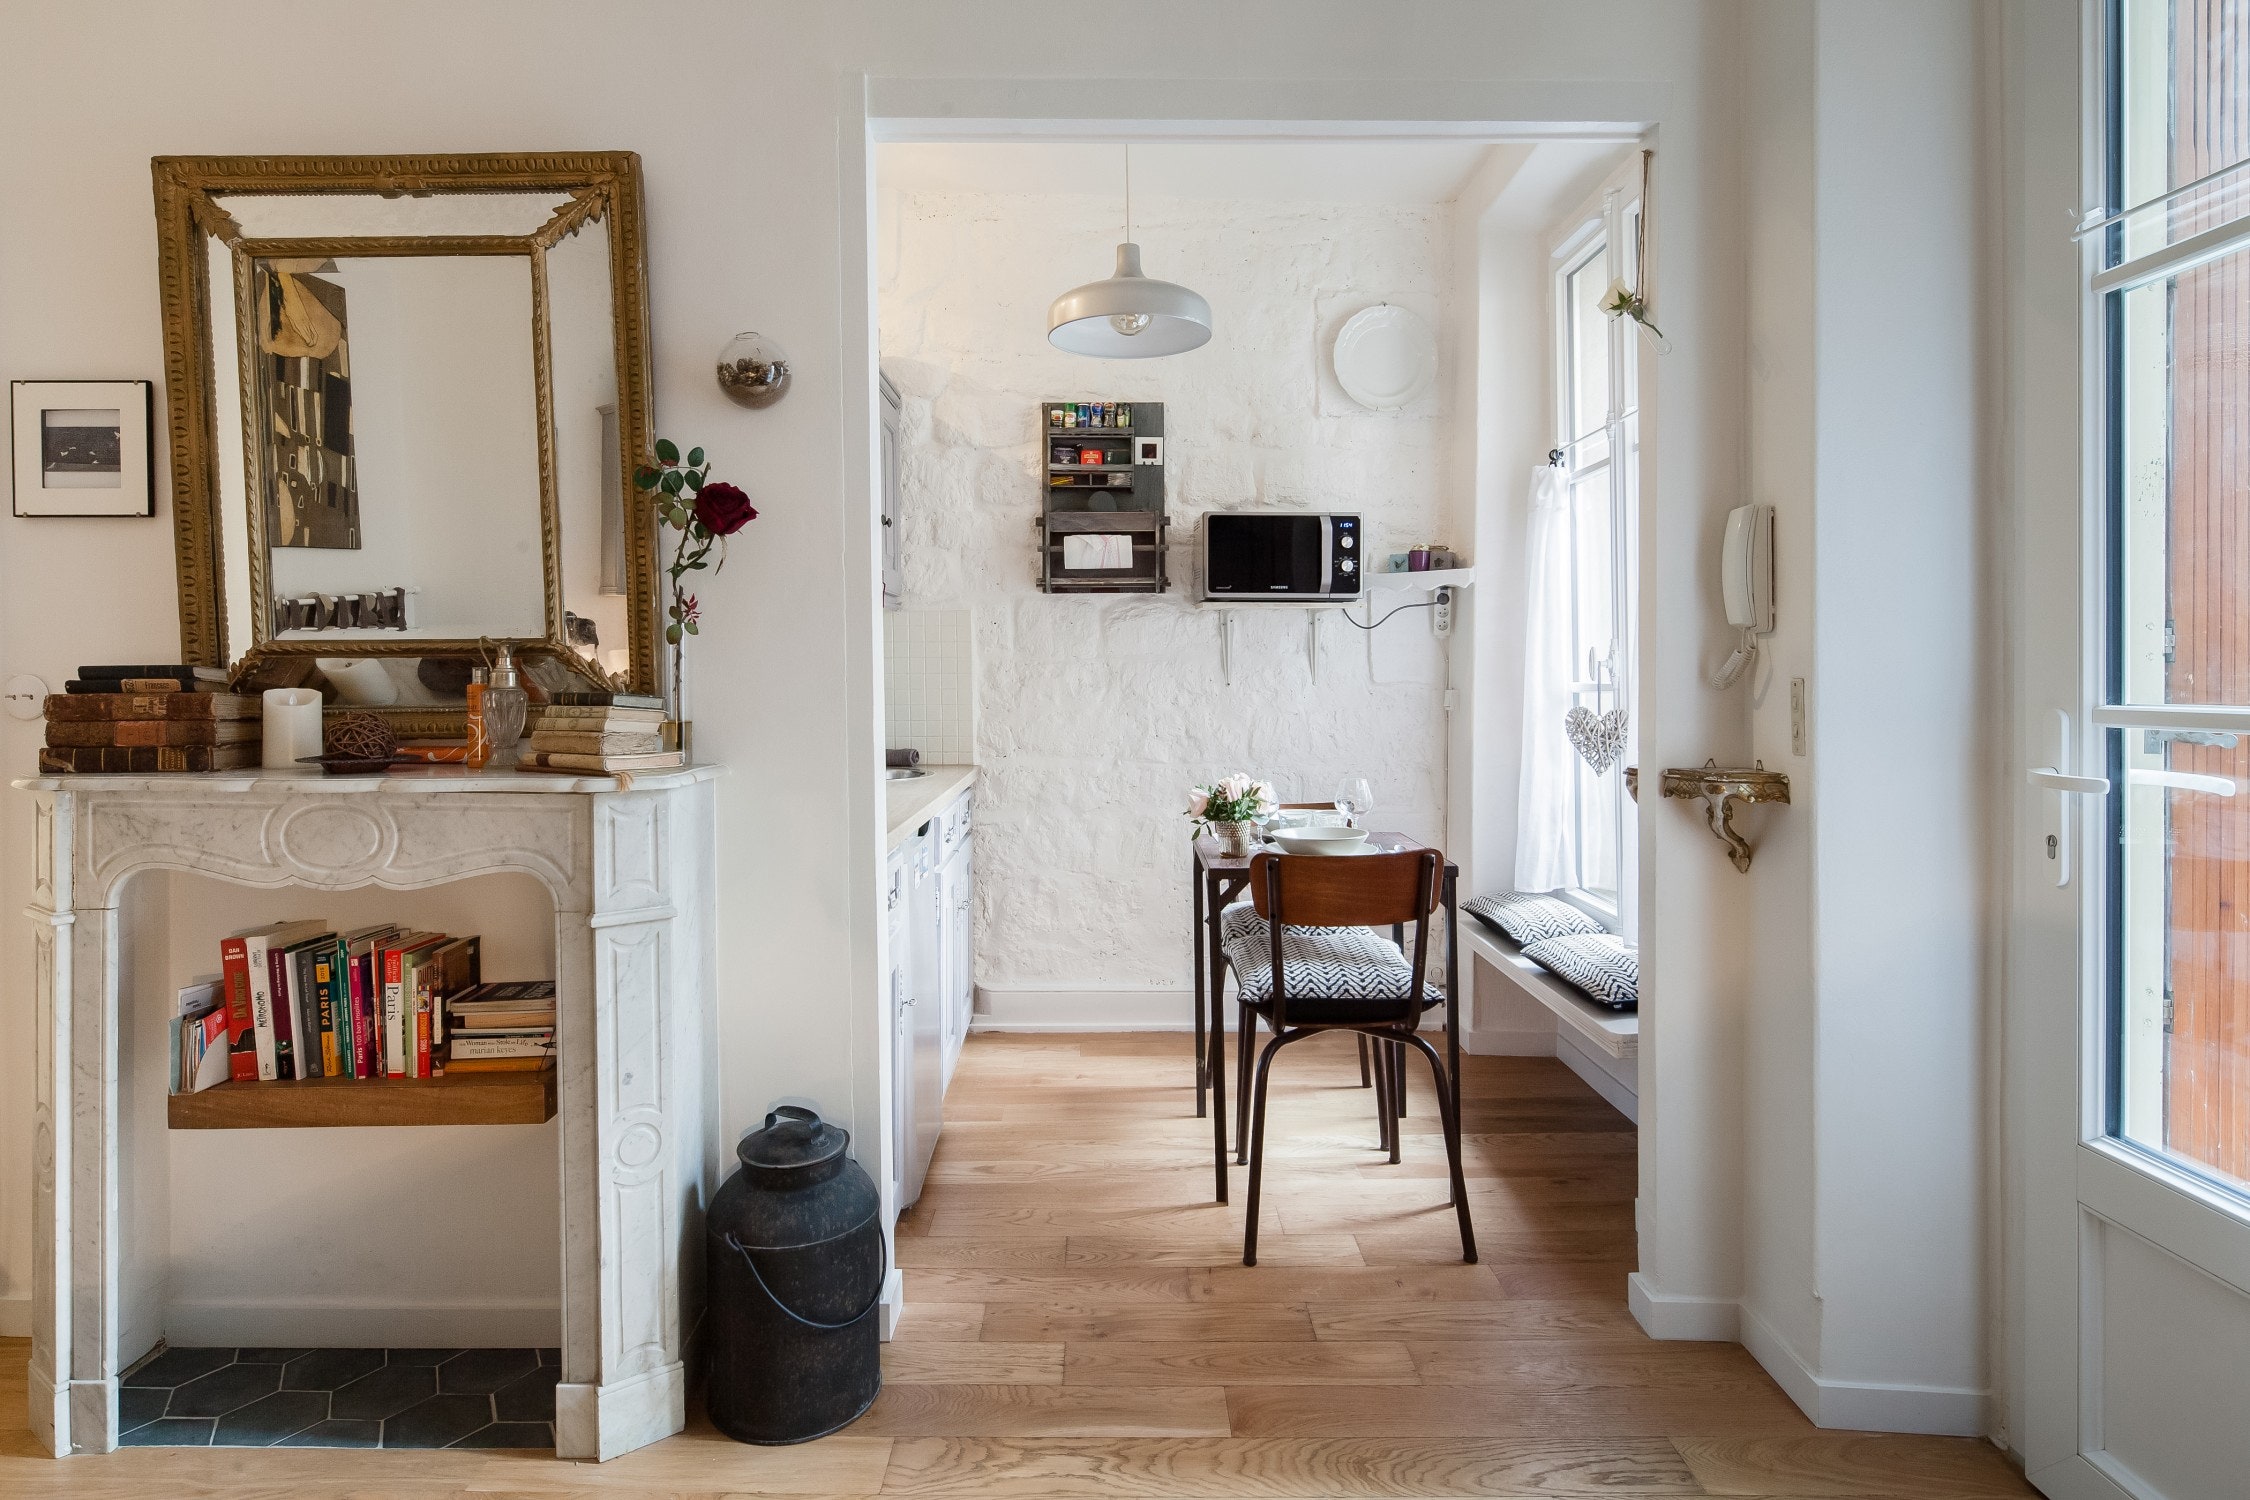 <p>Trouver un logement pour moins de 100 euros la nuit est presque impossible à Paris, mais cet appartement à la limite du 18e arrondissement, près du Sacré-Coeur, s'en rapproche beaucoup. Oui, c'est un studio à l'espace restreint, mais il s'adapte à tous vos besoins : vous avez un lit double, un coin bureau, un placard où suspendre vos vêtements, une salle à manger et une kitchenette (avec mini-frigo, plaques à induction et une machine Nespresso). Vous aurez également accès au jardin commun de l'immeuble, avec jardinières et vignes et une petite table pour vous asseoir tout en savourant votre café du matin. En tant qu'Airbnb Plus, l'appartement a passé avec succès son inspection et dispose d'un Wi-Fi puissant, d'un check-in facile et de produits d'hygiène comme du shampoing à portée de main pour vous permettre de gagner de la place dans vos bagages cabines !</p> <div class="callout"><p><a href="https://airbnb.pvxt.net/LXqe90" title="Réservez ici">Réservez ici</a></p> </div><p>Inscrivez-vous à l’une de nos newsletters pour recevoir toute l’actualité mode, culture et les recommandations shopping de GQ directement dans votre boite mail.</p><a href="https://newsletter.gqmagazine.fr/?sourceCode=msnsend">S’inscrire ici</a>